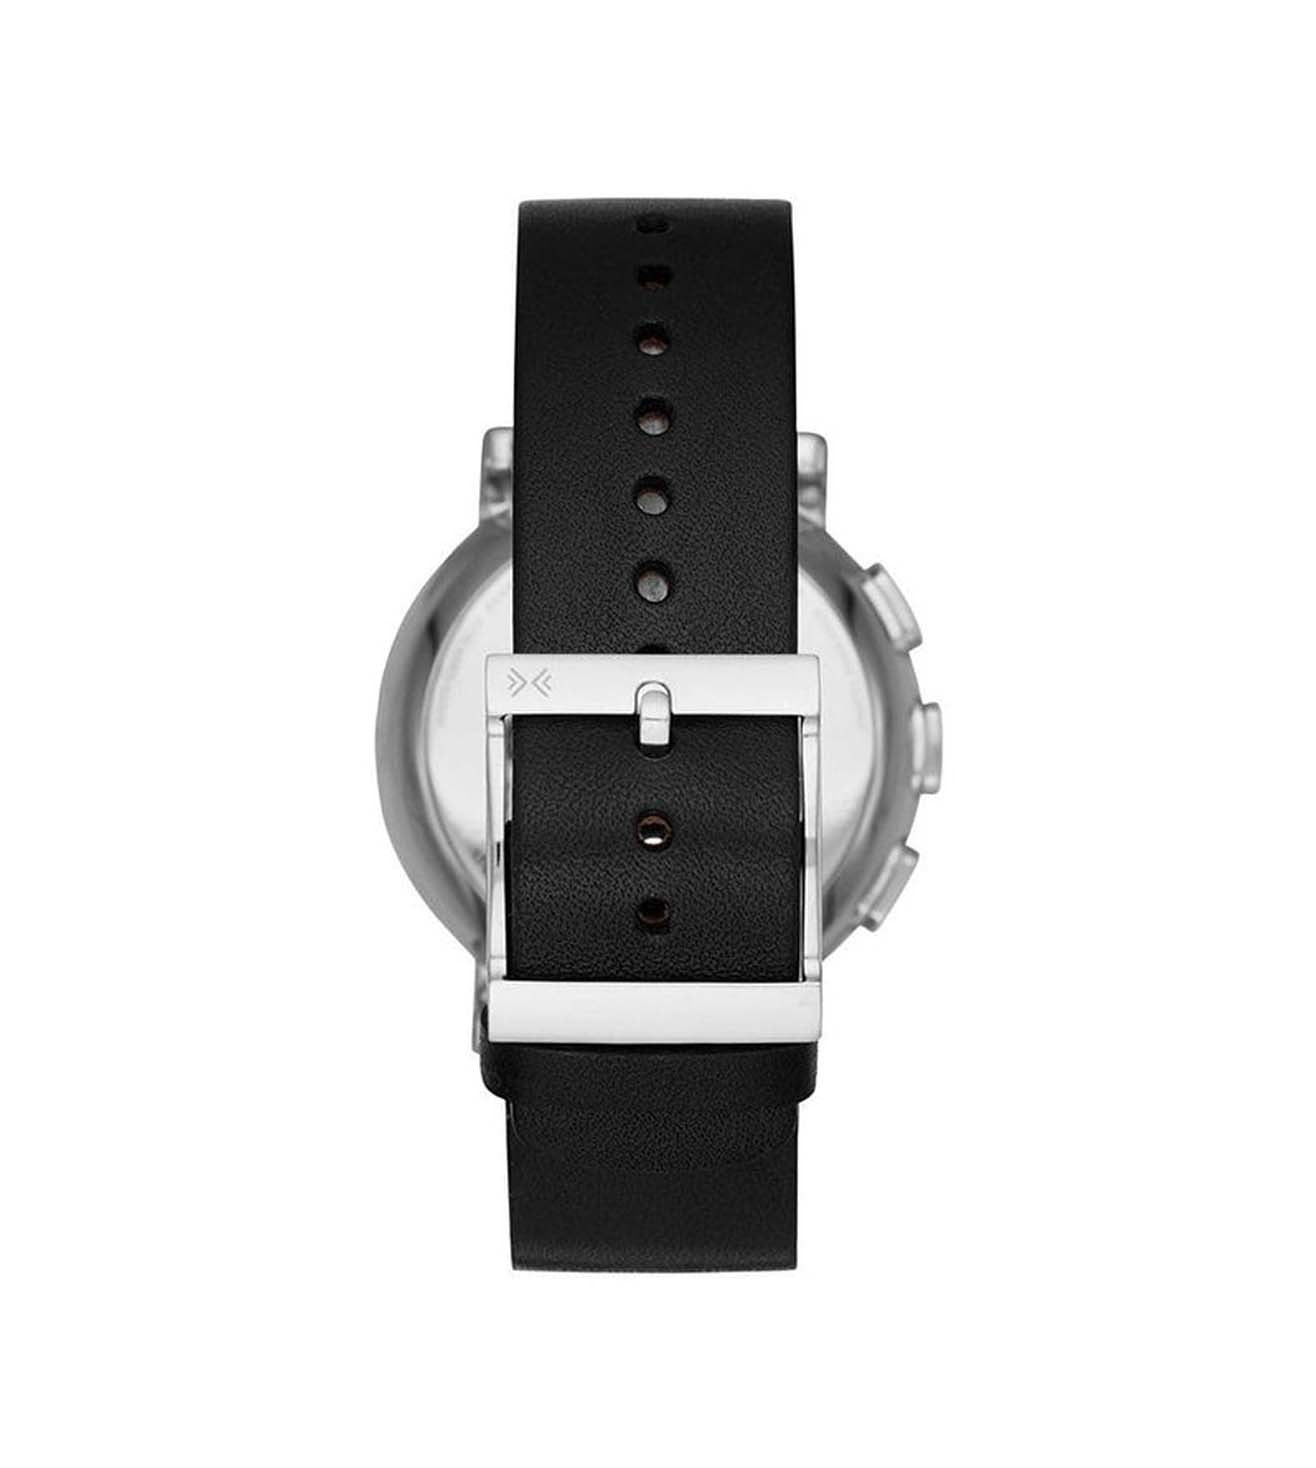 SKAGEN SKT1101 Hagen Smart watch Watch for Men ‌